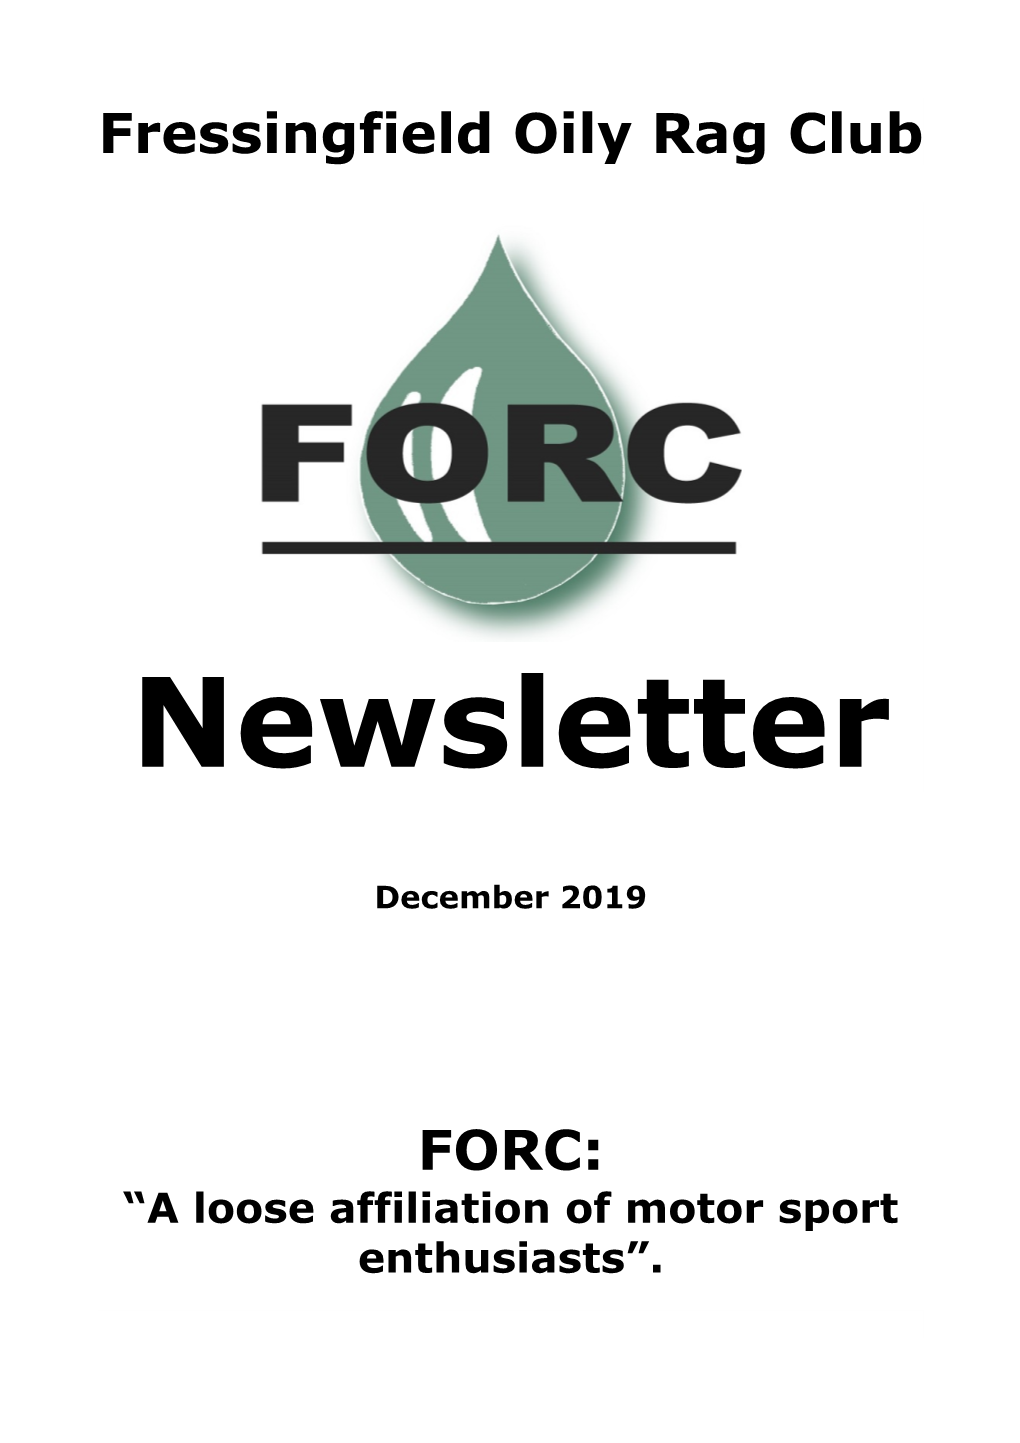 FORC Newsletter December 2019